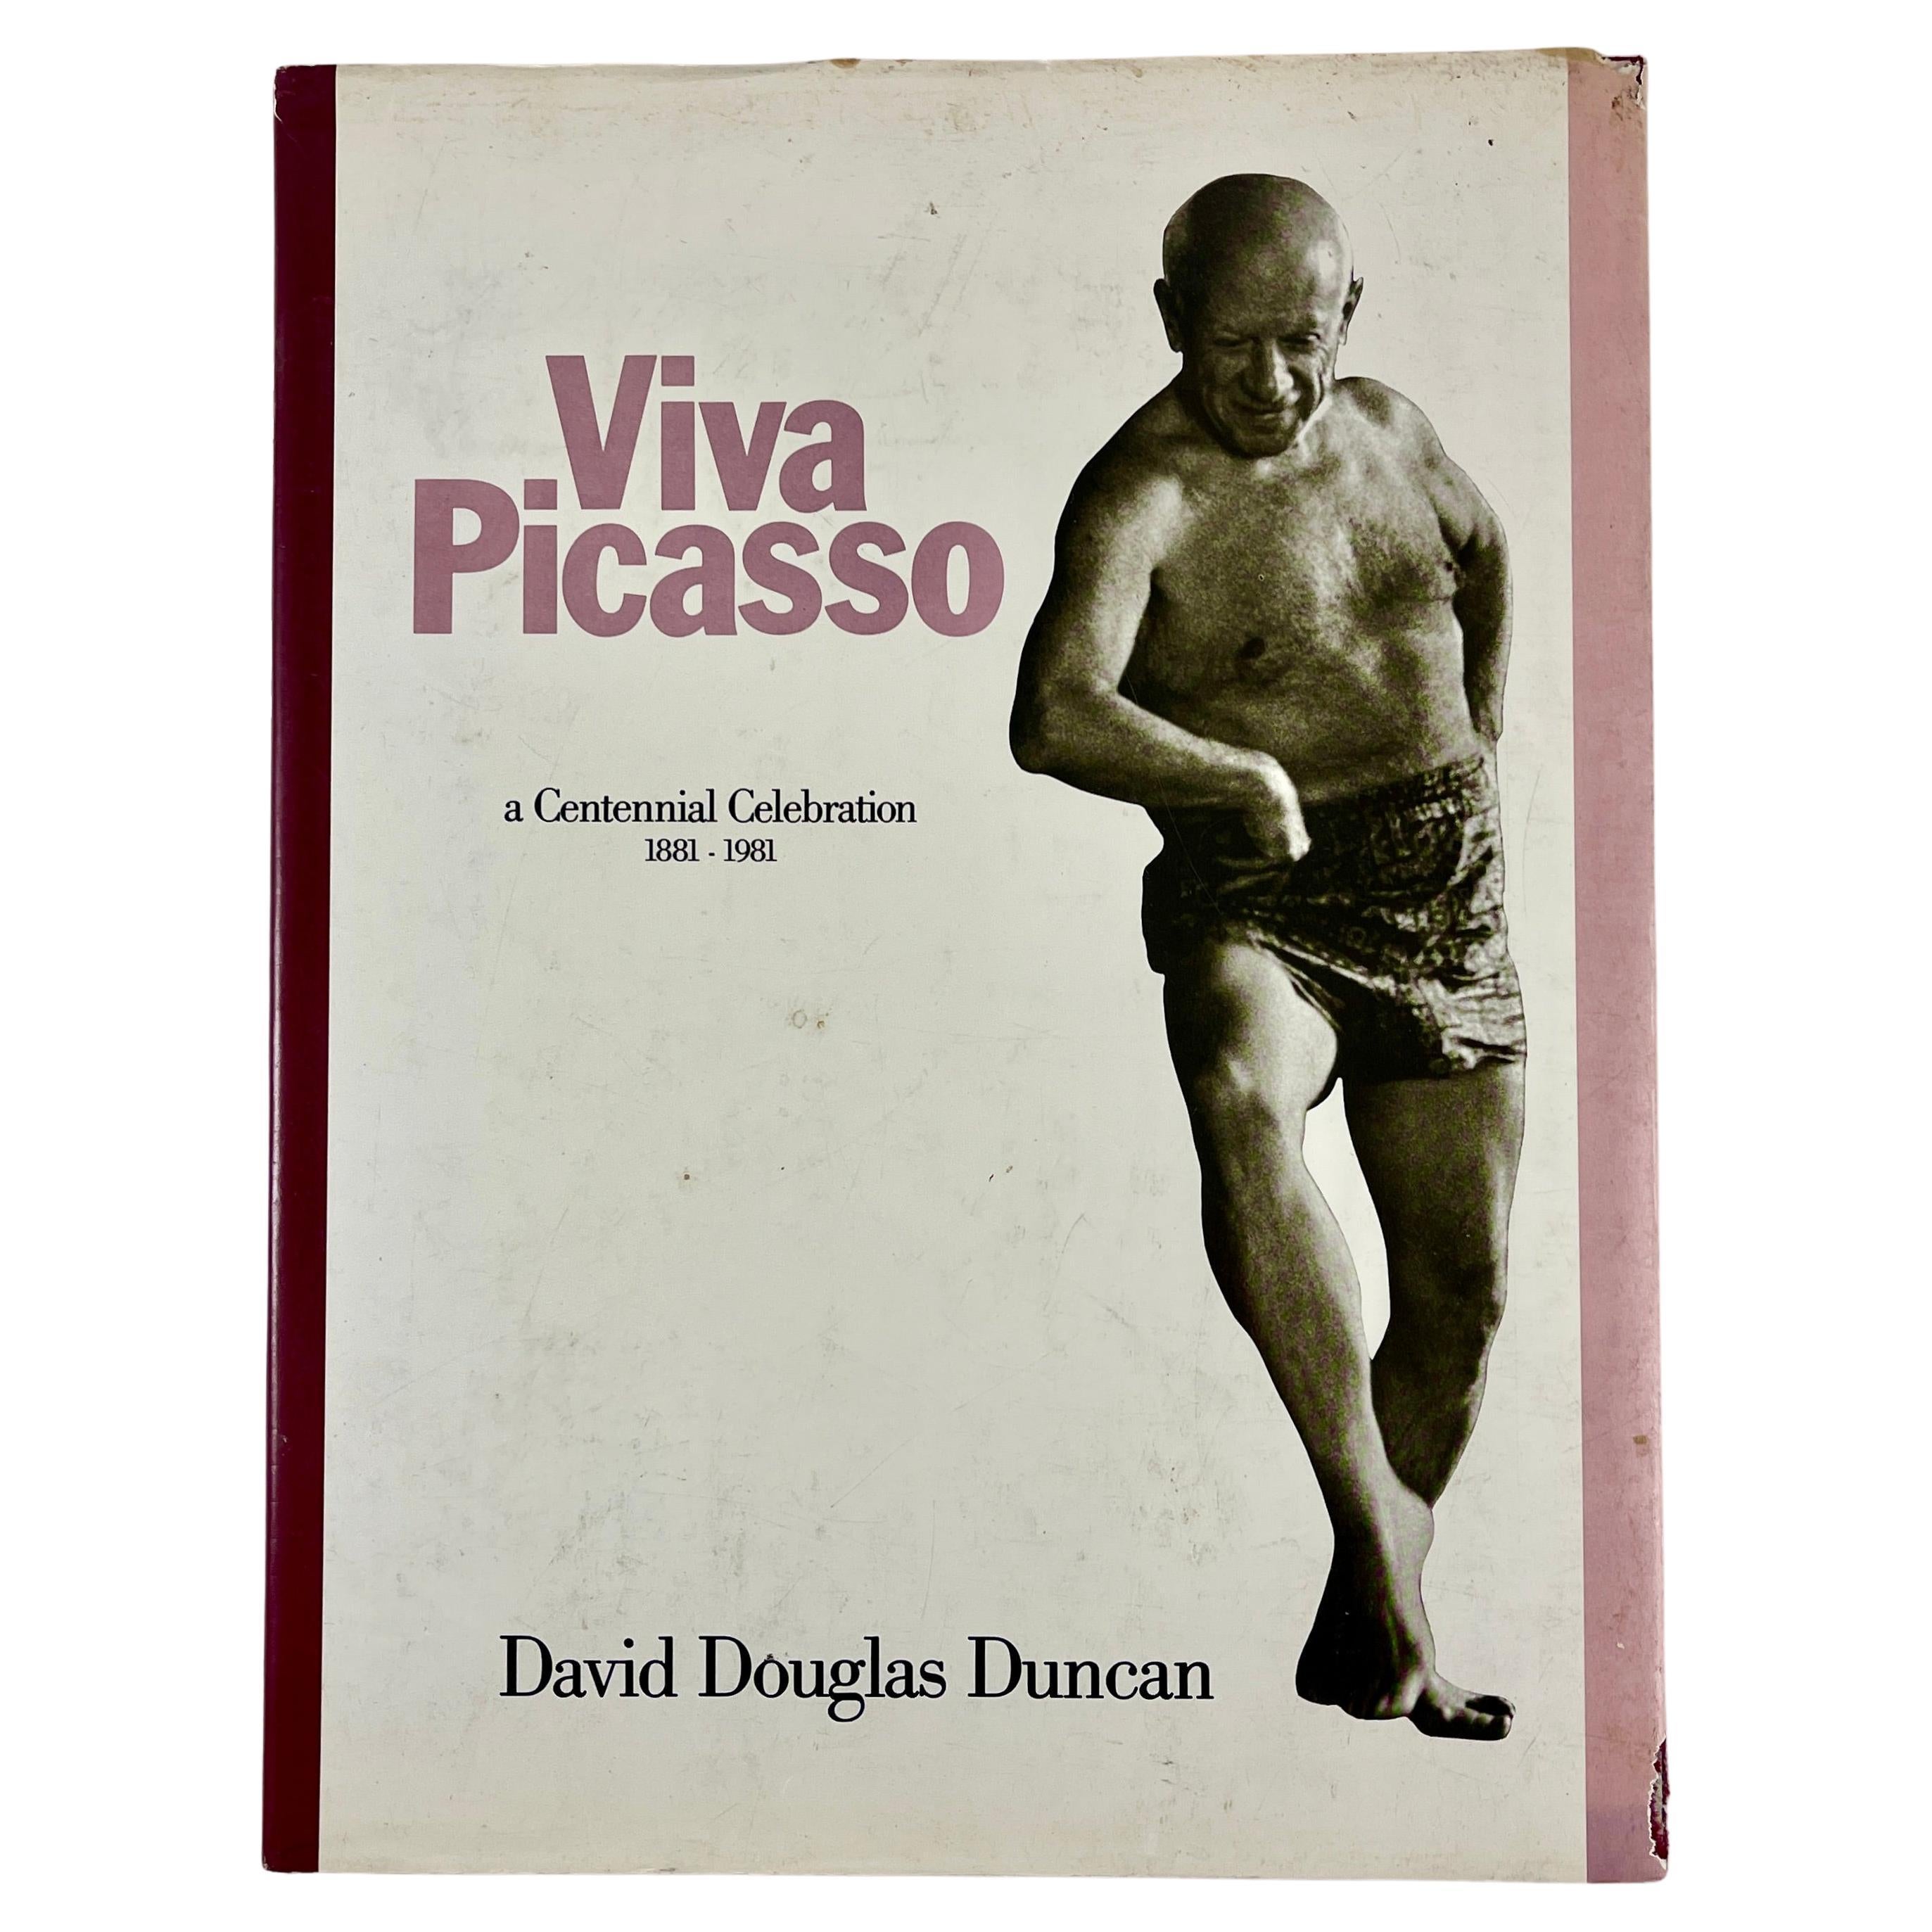 Viva Picasso : une célébration du centenaire - Livre à couverture rigide 1881-1981 avec veste en vente